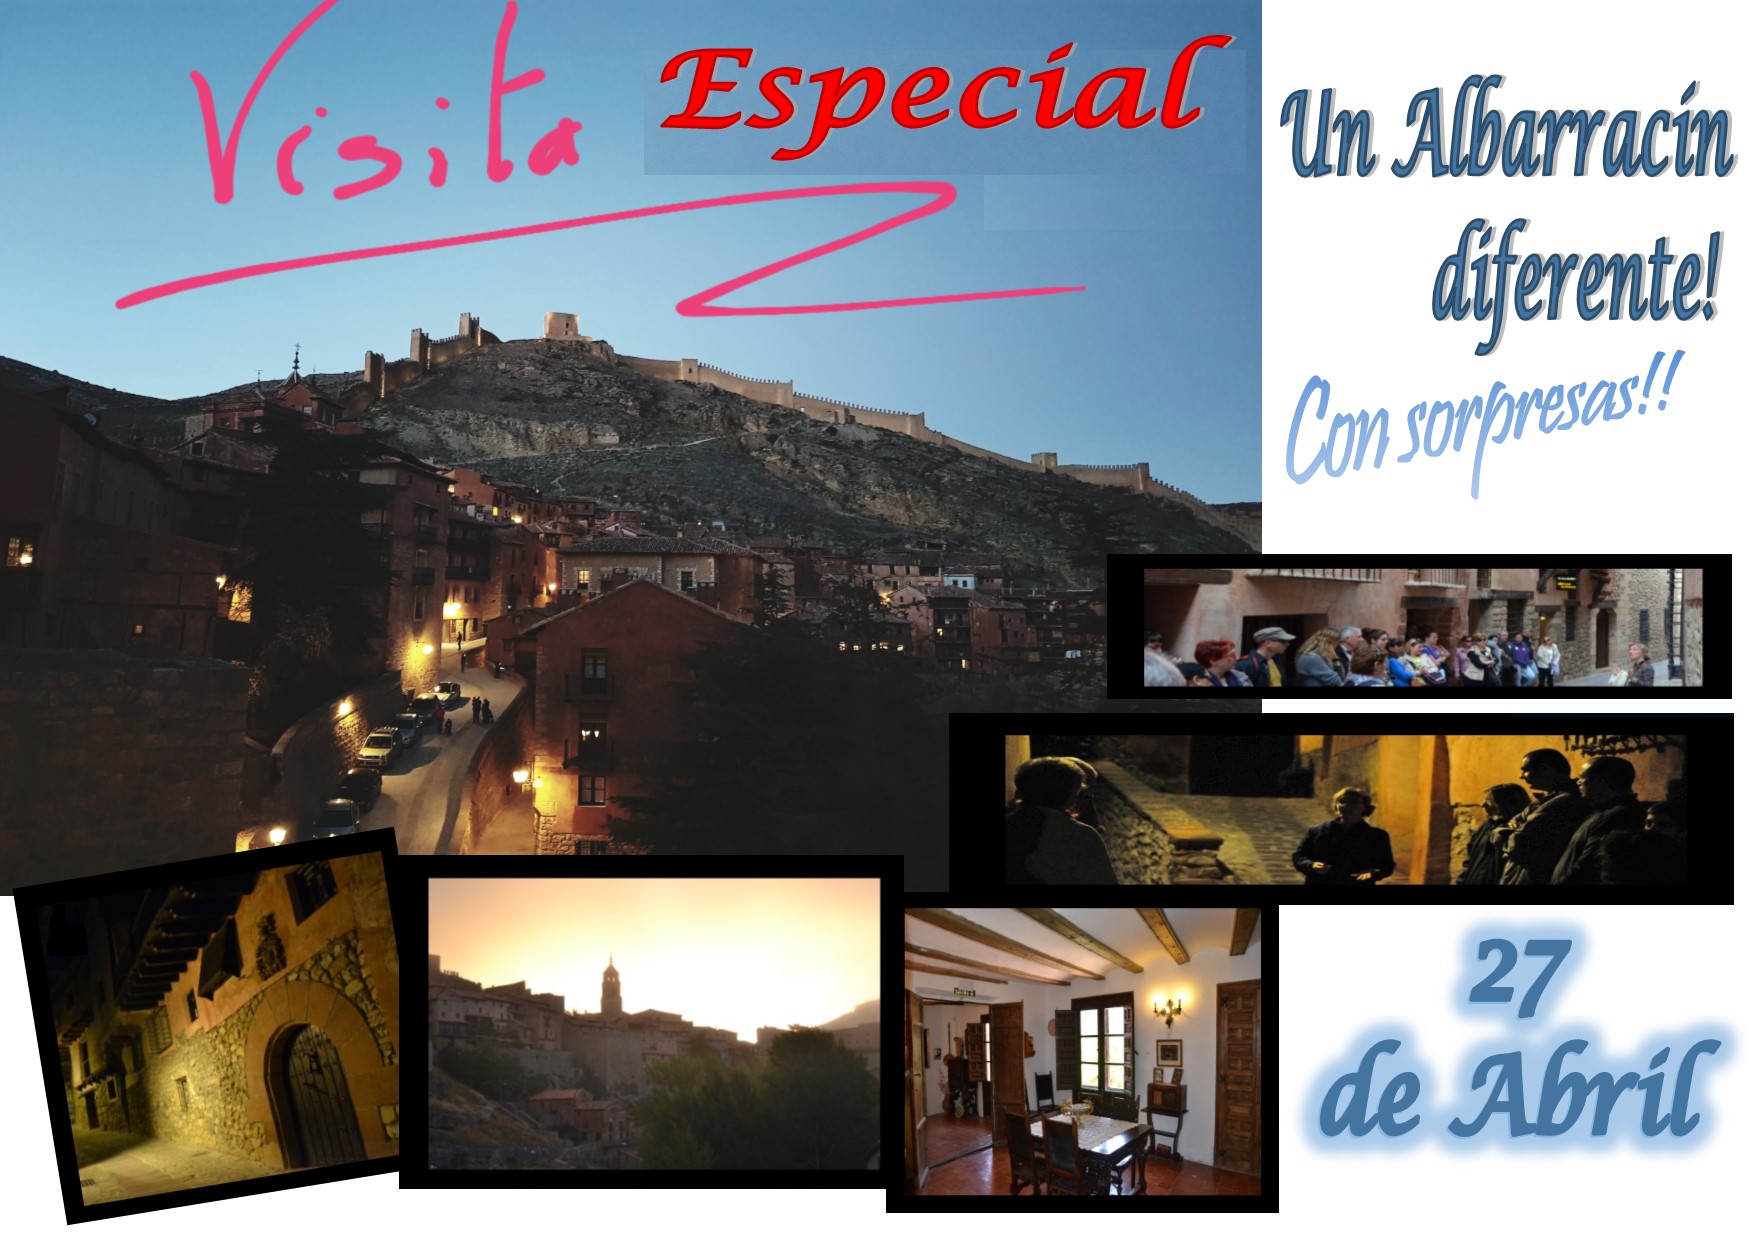 Este Sábado 27 de Abril por la tarde…Albarracín ESPECIAL…y con sorpresas!